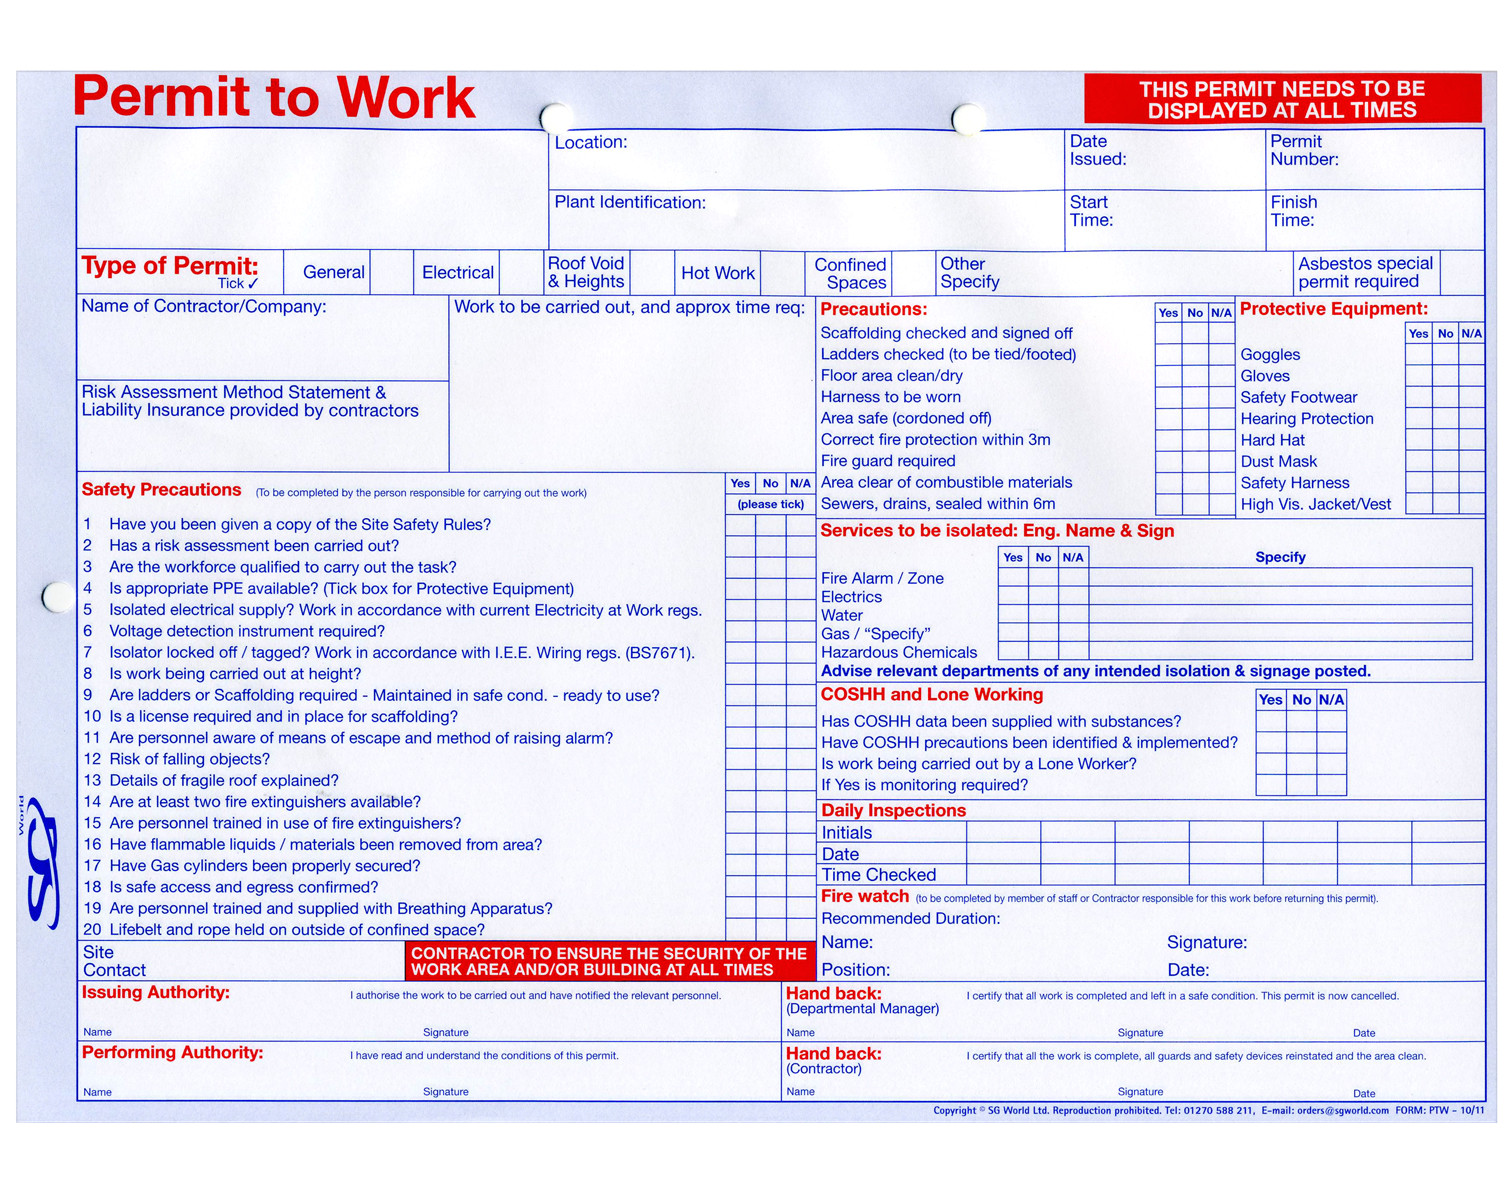 multipurpose permit to work